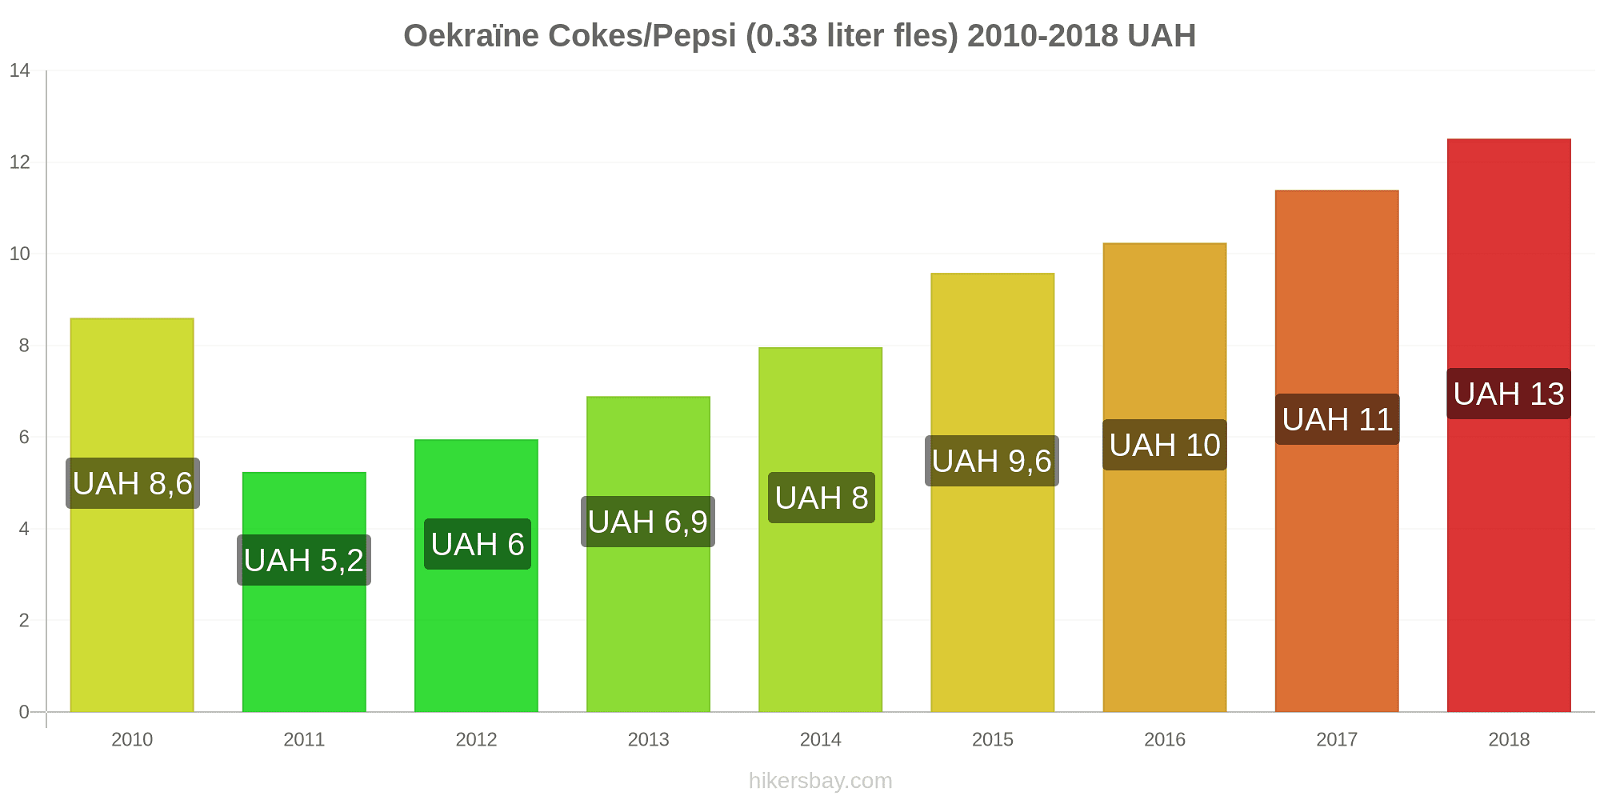 Oekraïne prijswijzigingen Cokes/Pepsi (0,33 literfles) hikersbay.com